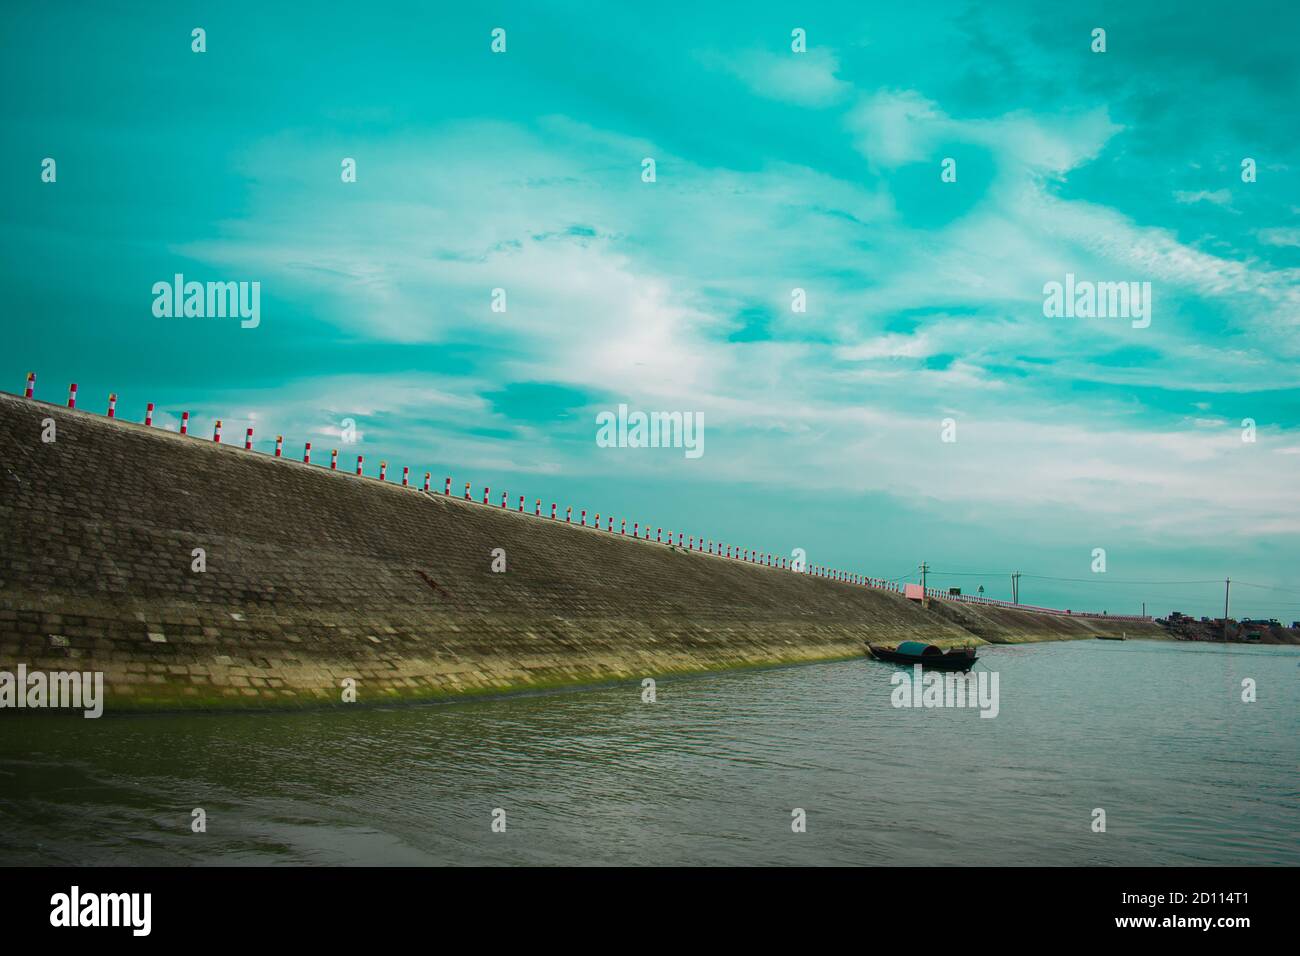 kishoreganj, Bangladesh sky, road, river, boat in one background Stock Photo